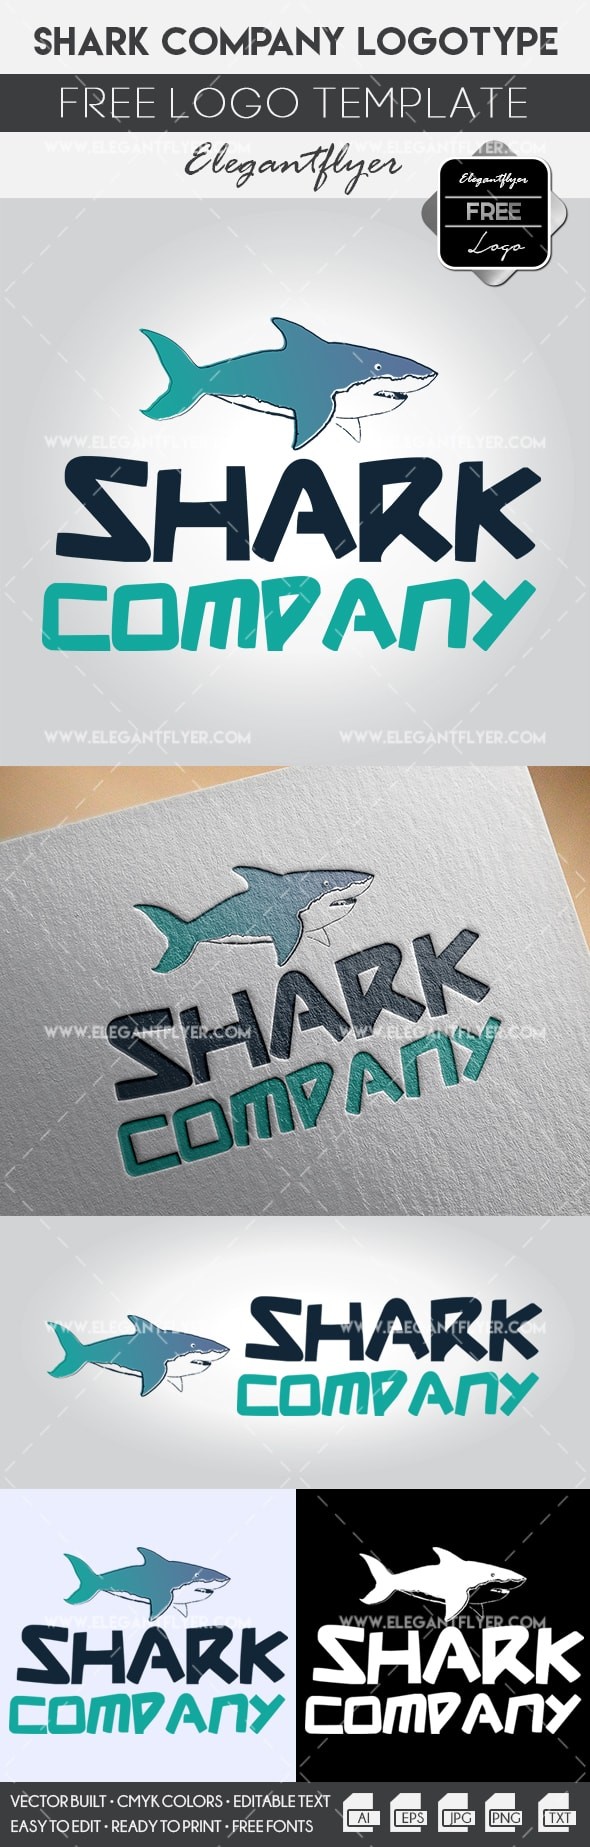 Shark Company -> Société Shark by ElegantFlyer